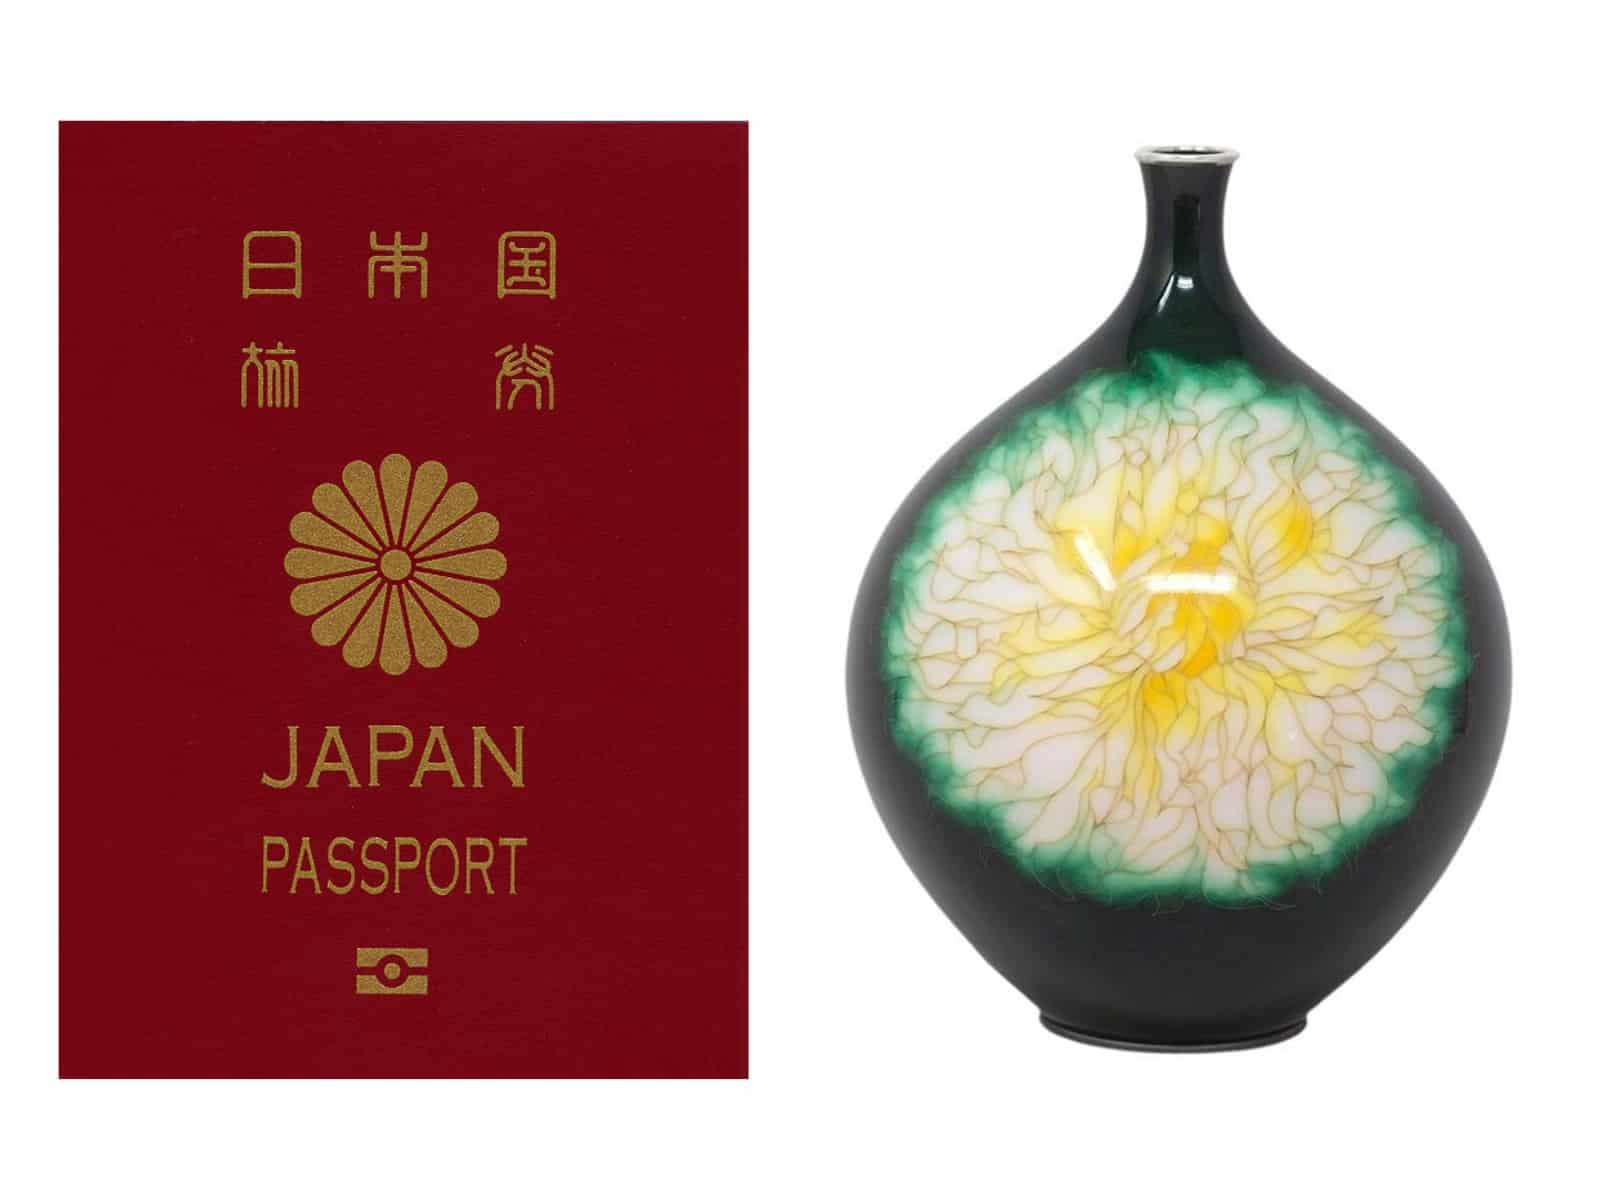 Chrysantheme auf japanischem Pass und japanische Chrysantheme-Vase aus Cloisonné-Emaille 1stdibs.com